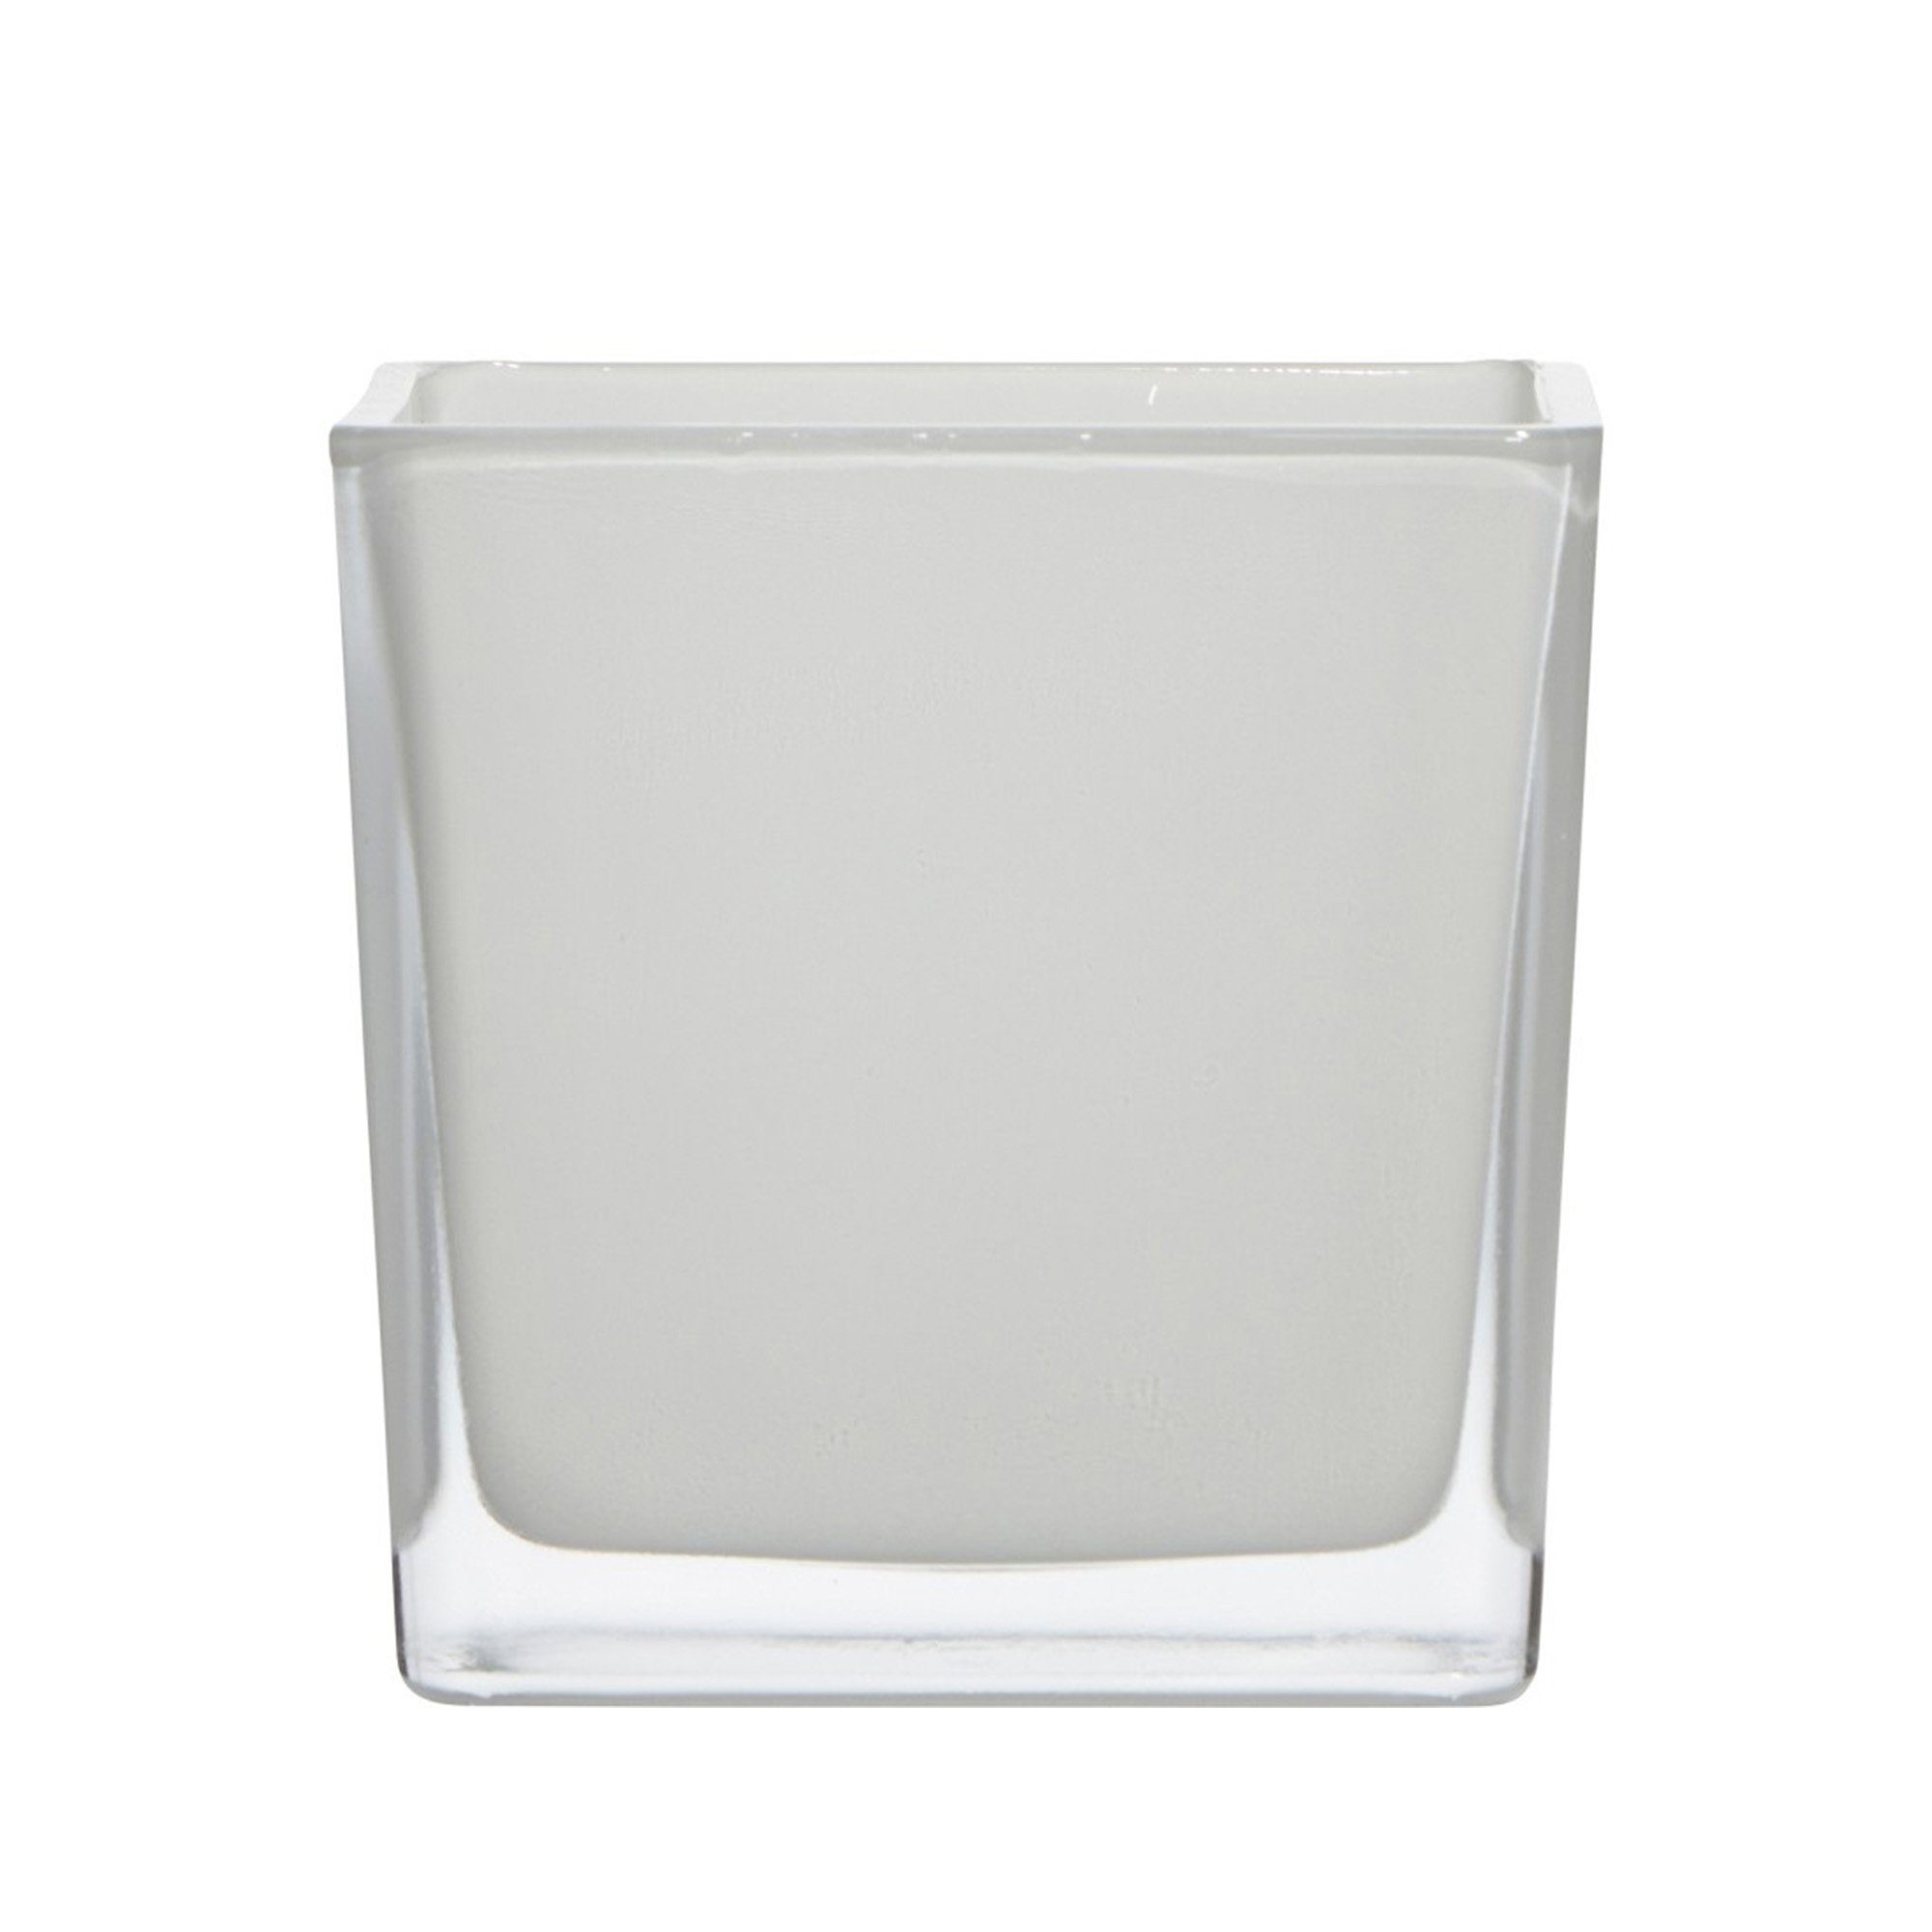 markenlose Dekovase Glasvase Cubic klar Quadratisch 6 x6 x 6cm Weiß